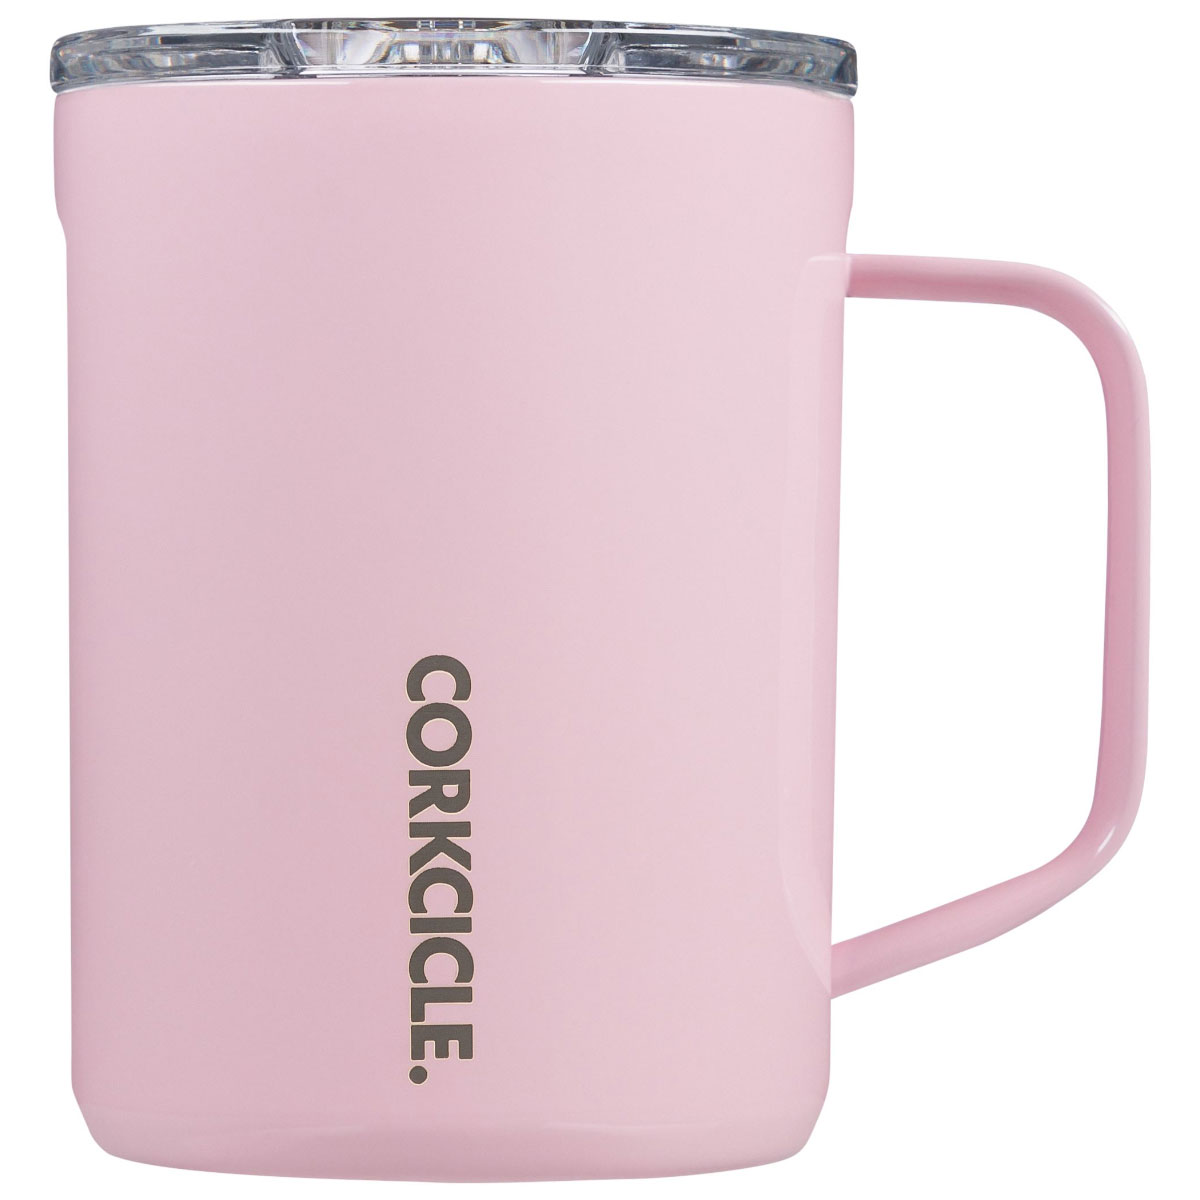 Corkcicle Corkcicle 16oz Coffee Mug - image 1 of 8